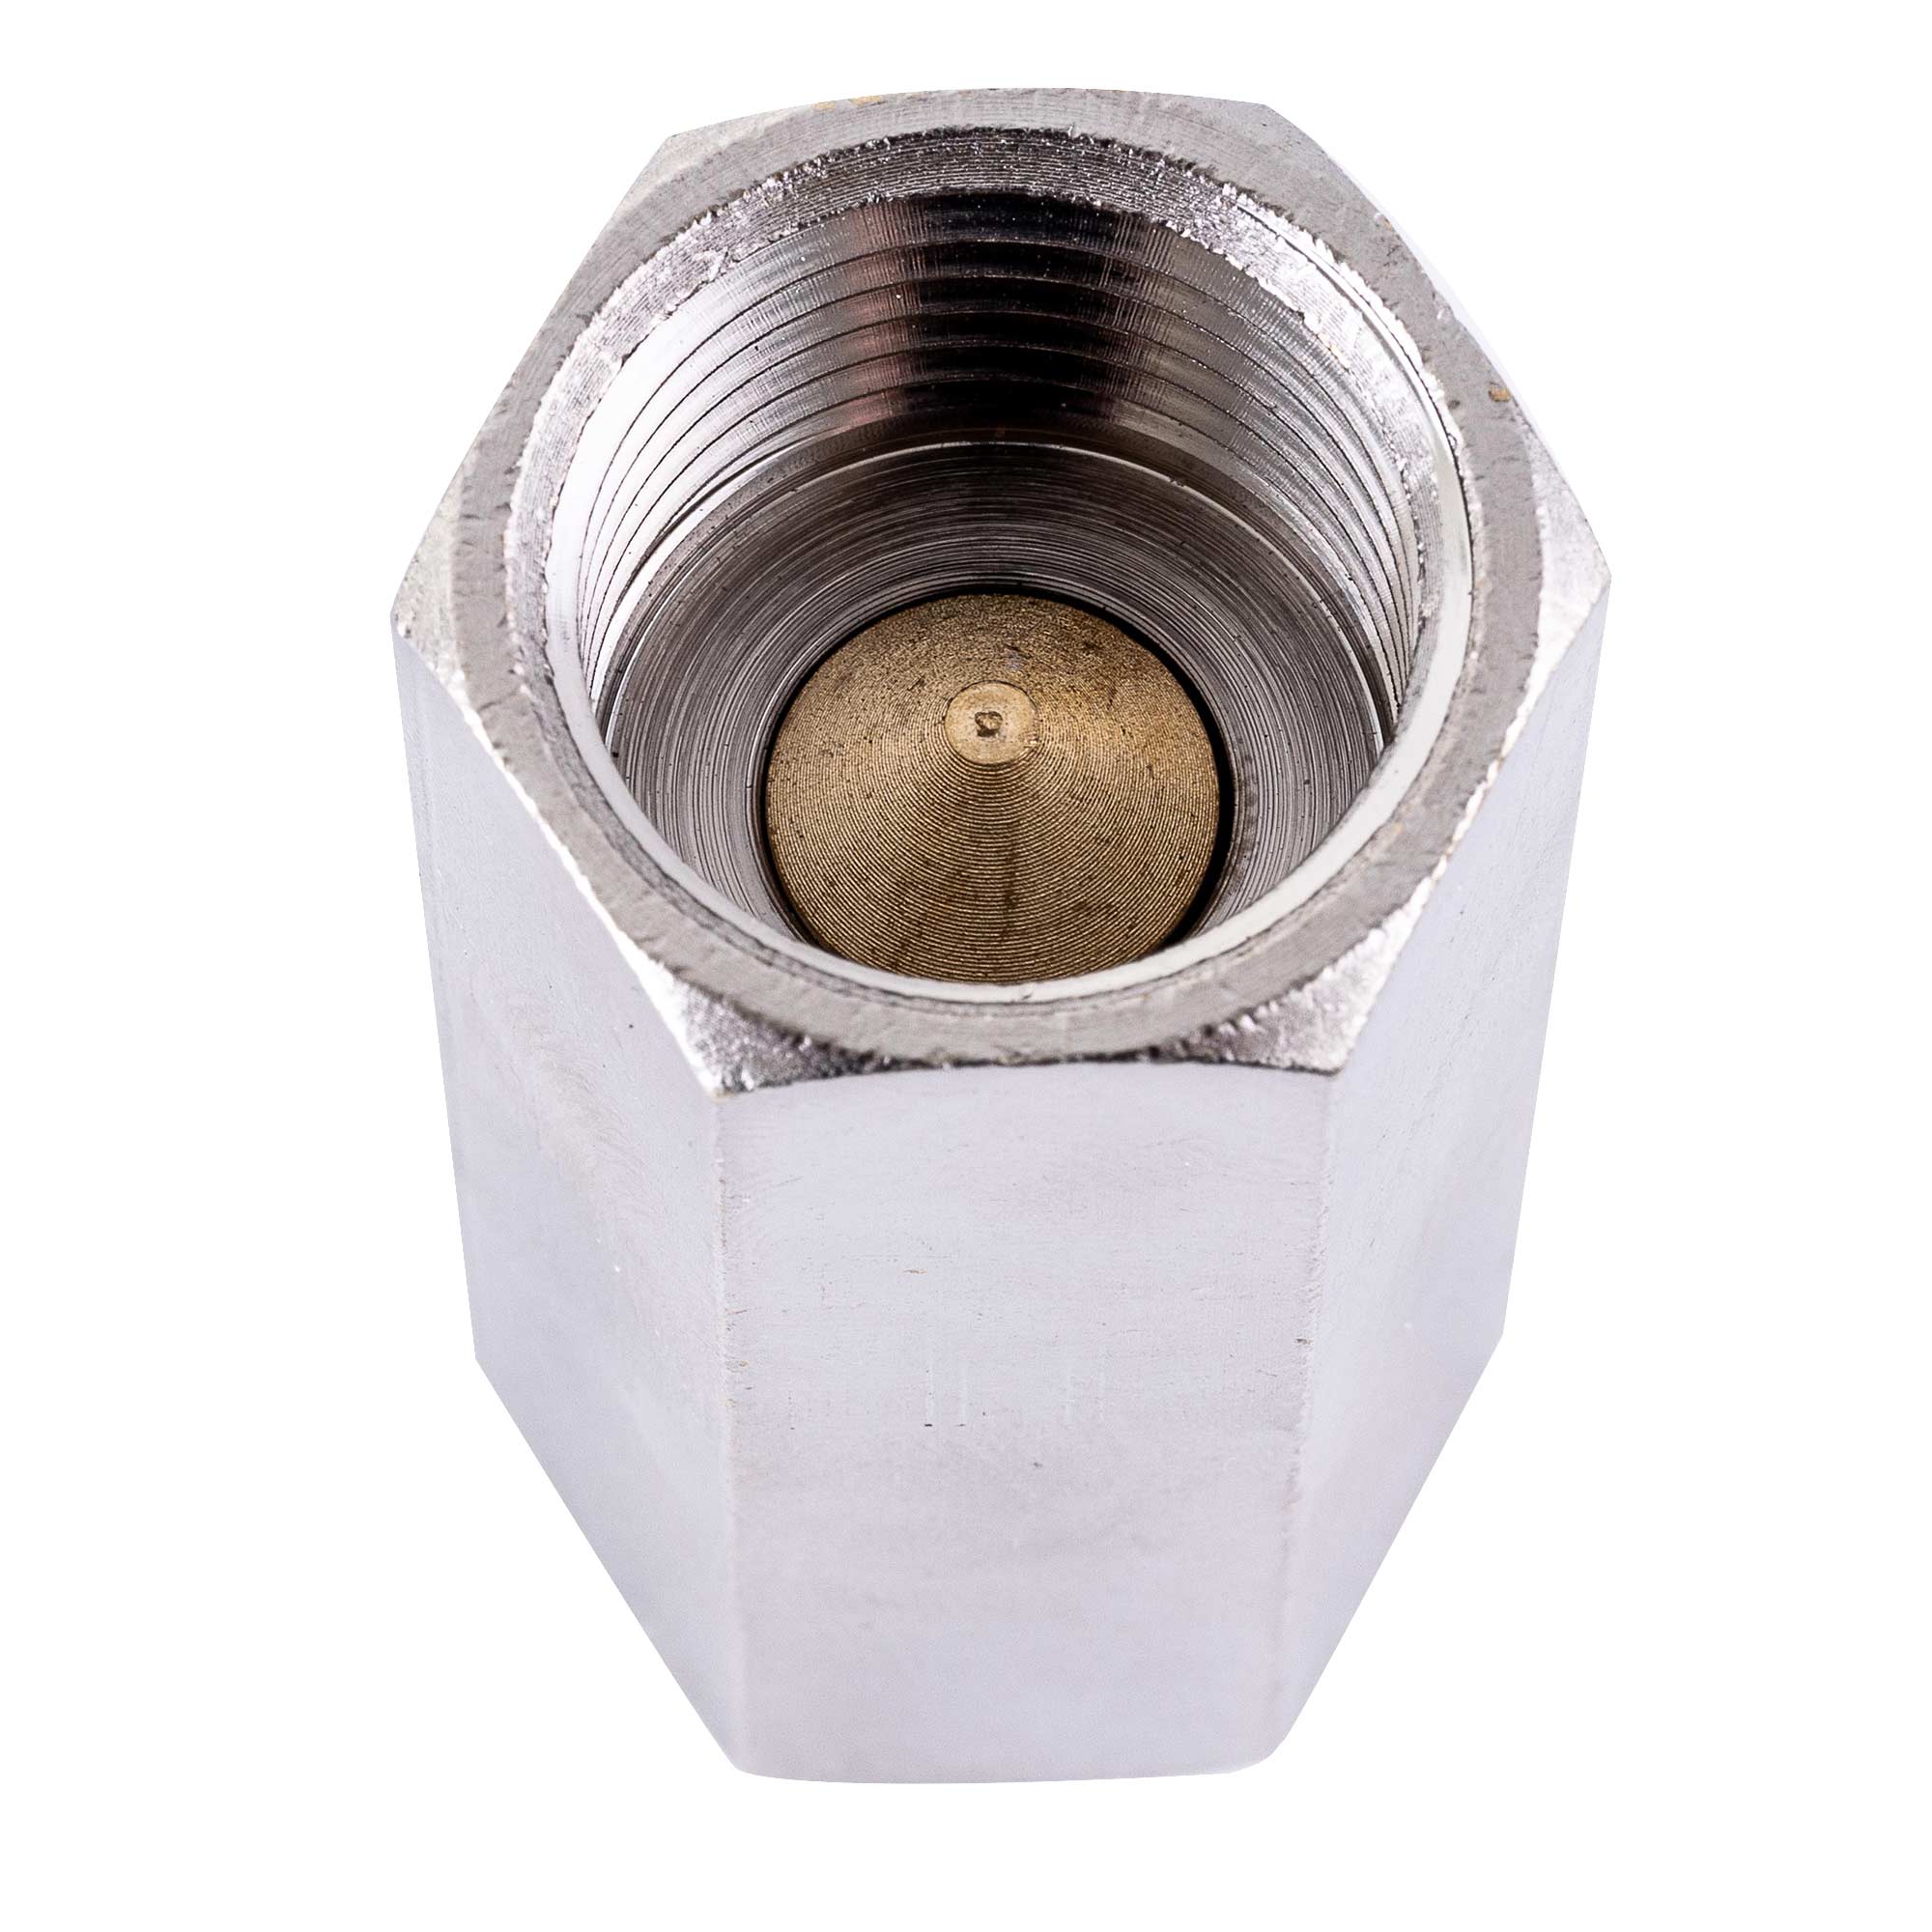 Zpětny ventil, pneumatický lineární ventil, 1/2", 10bar